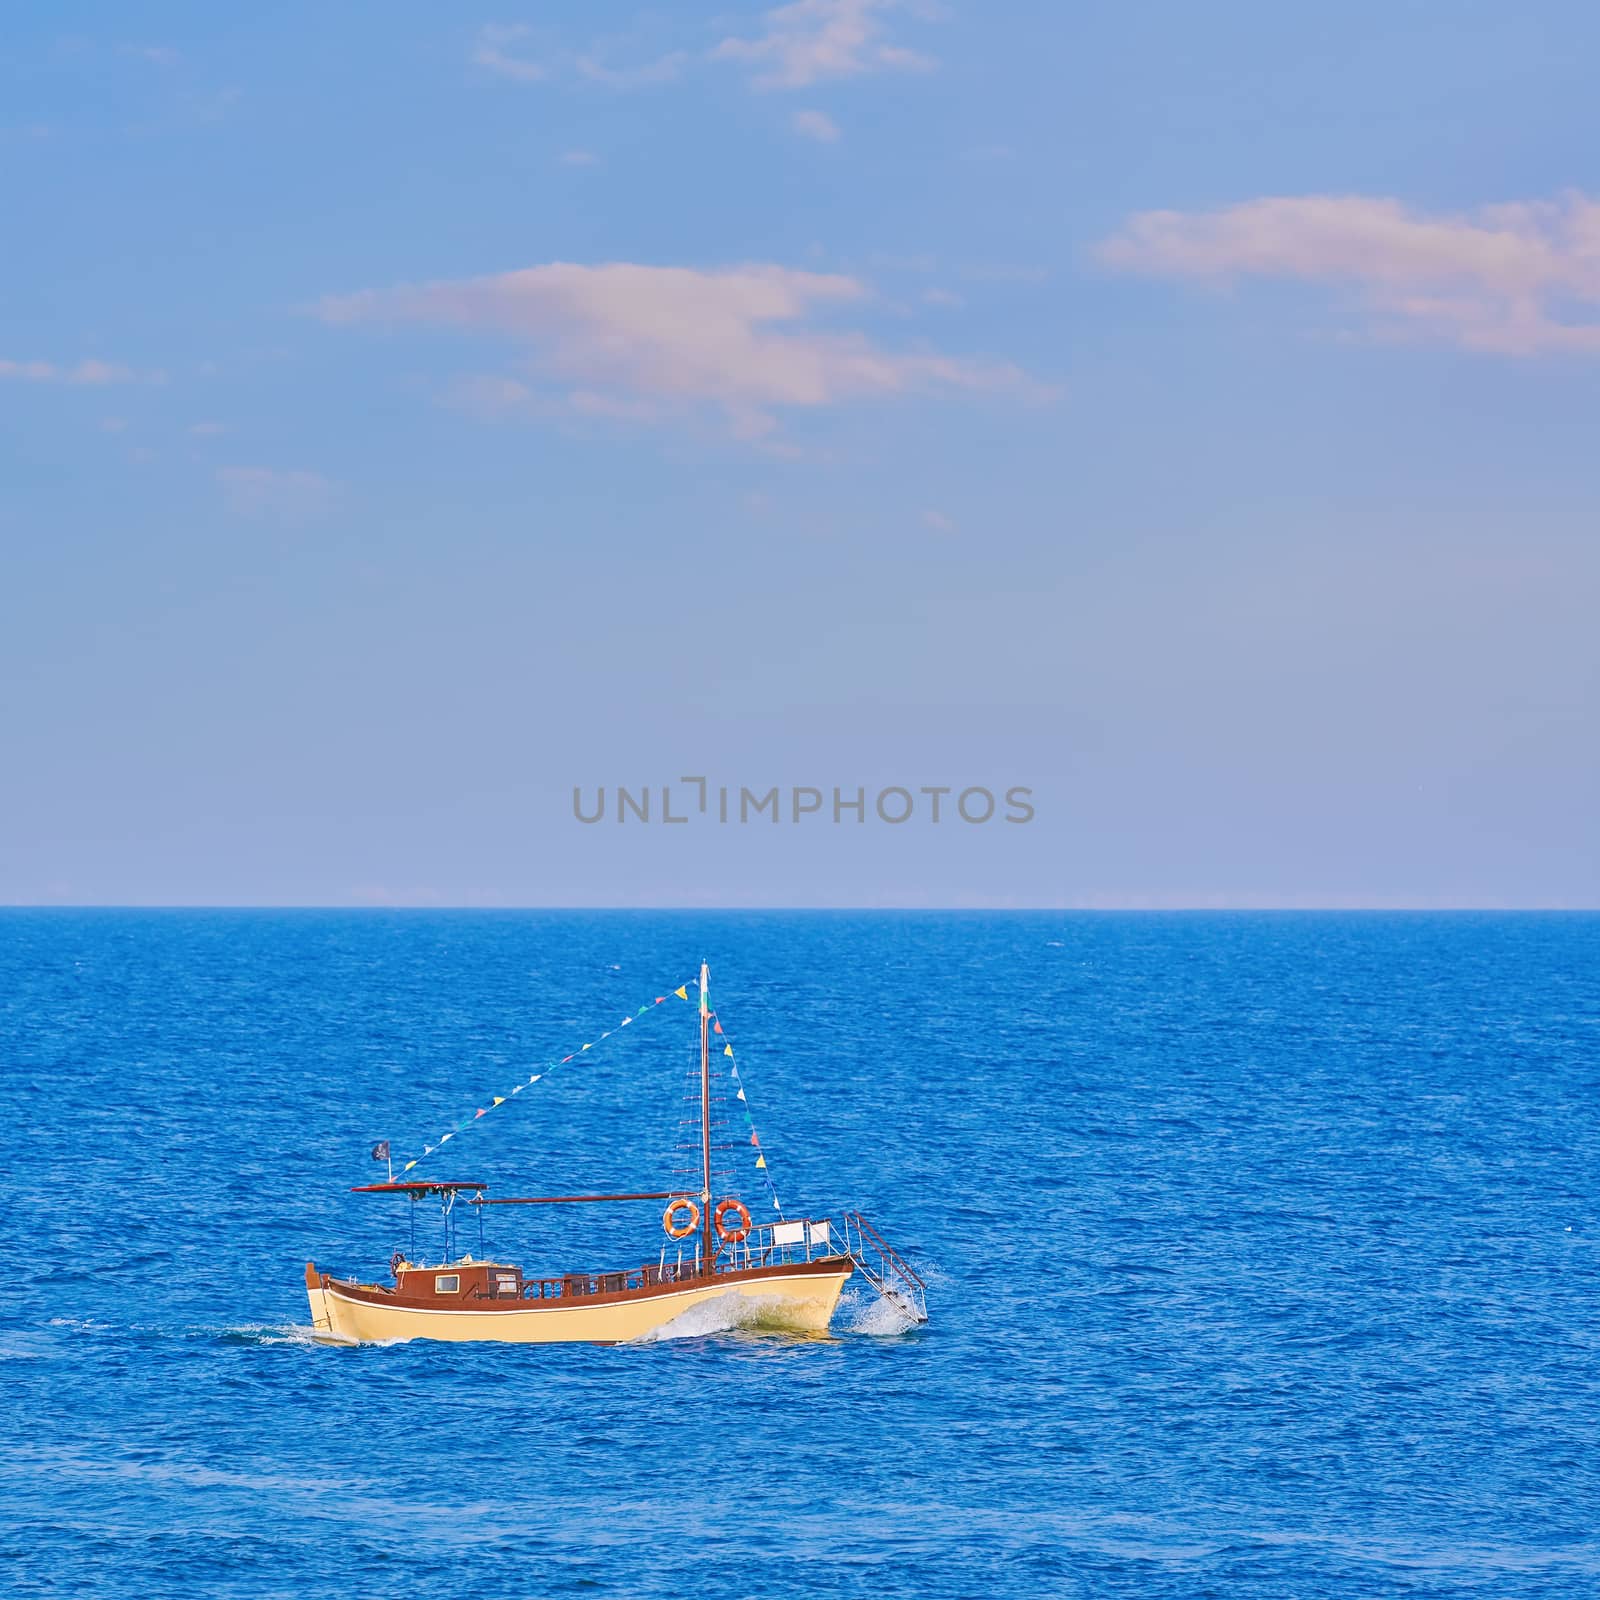 Motor Boat in the Black Sea, Bulgaria